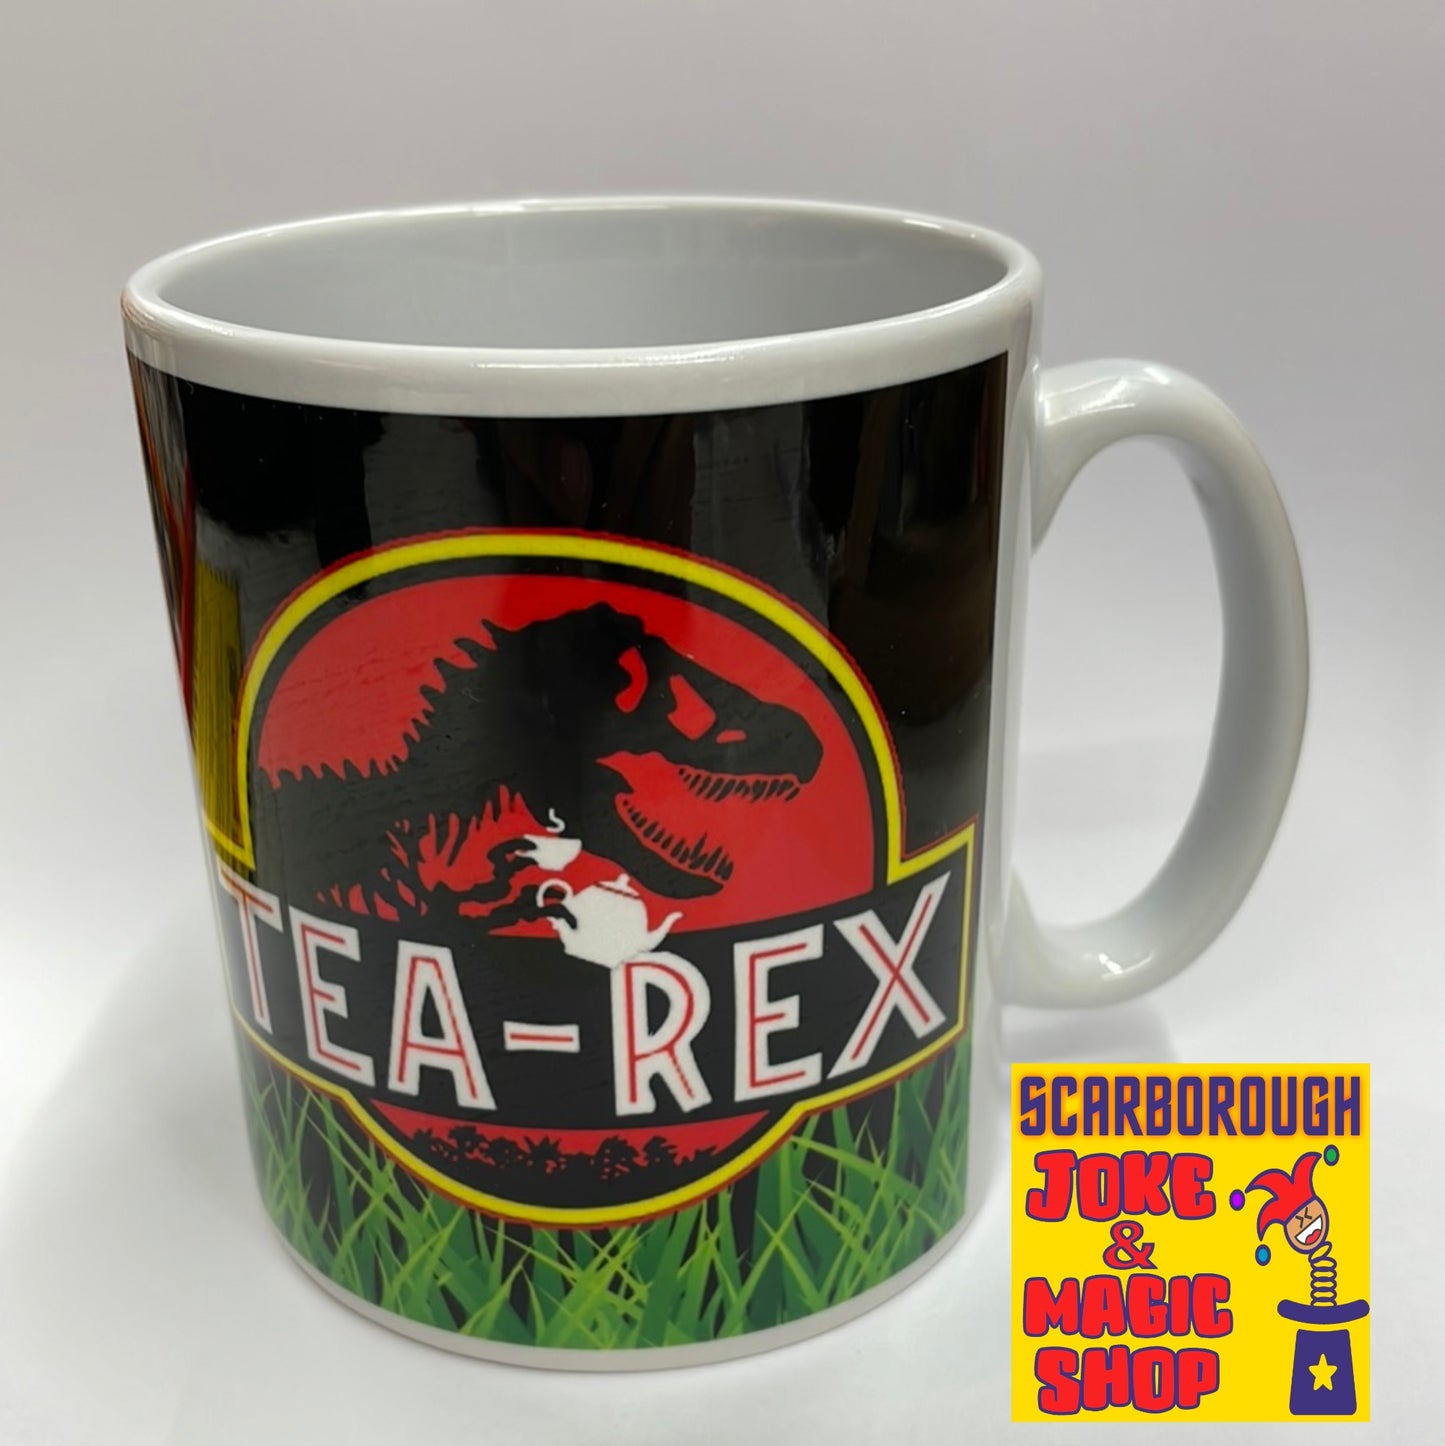 Tea-Rex Jurassic Park Mug